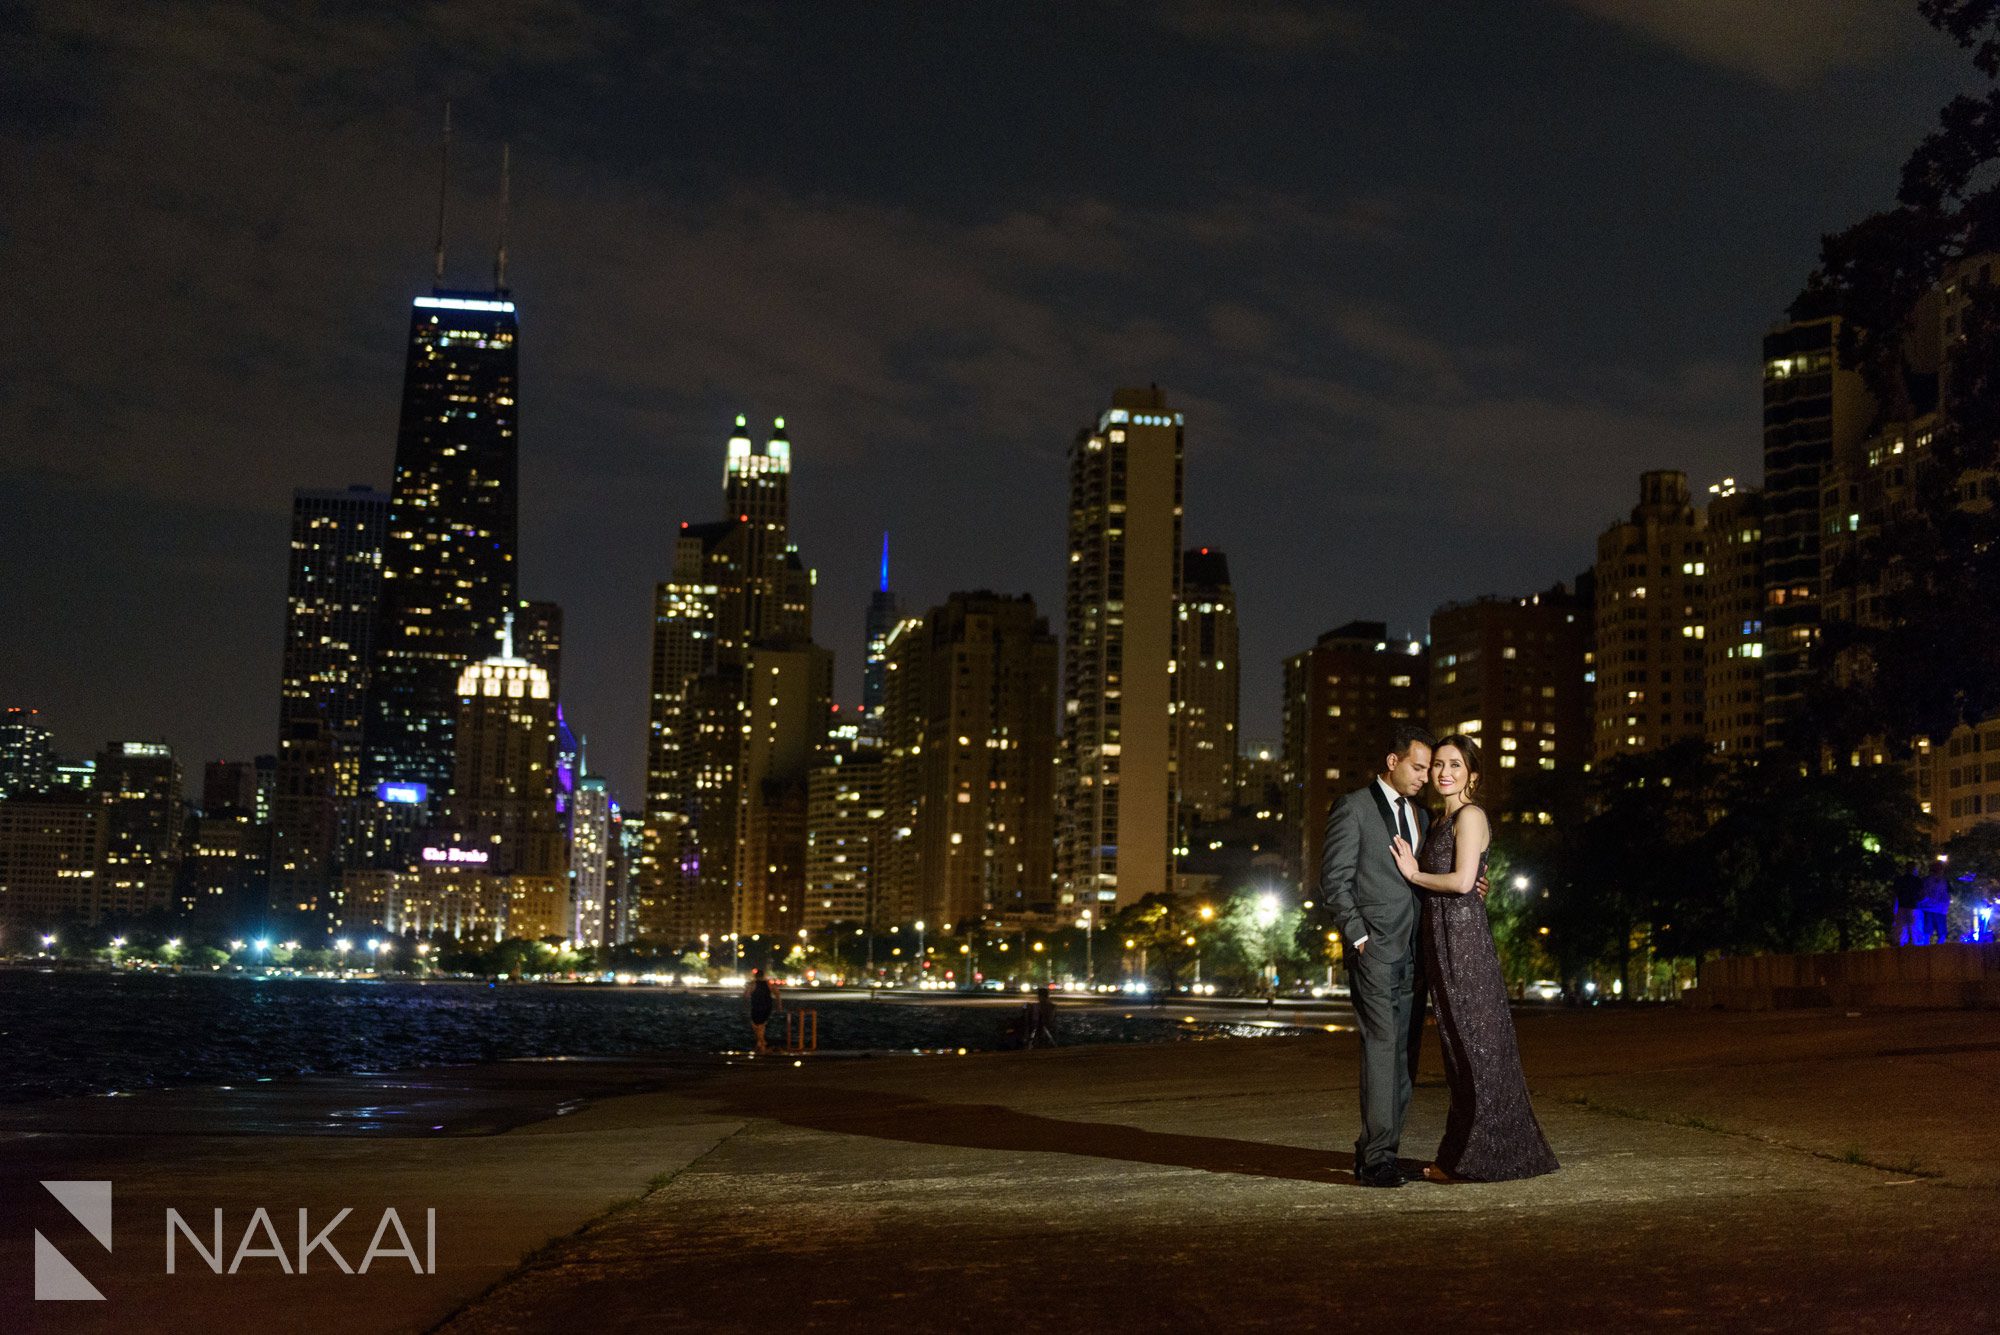 amazing Chicago engagement photos night time skyline